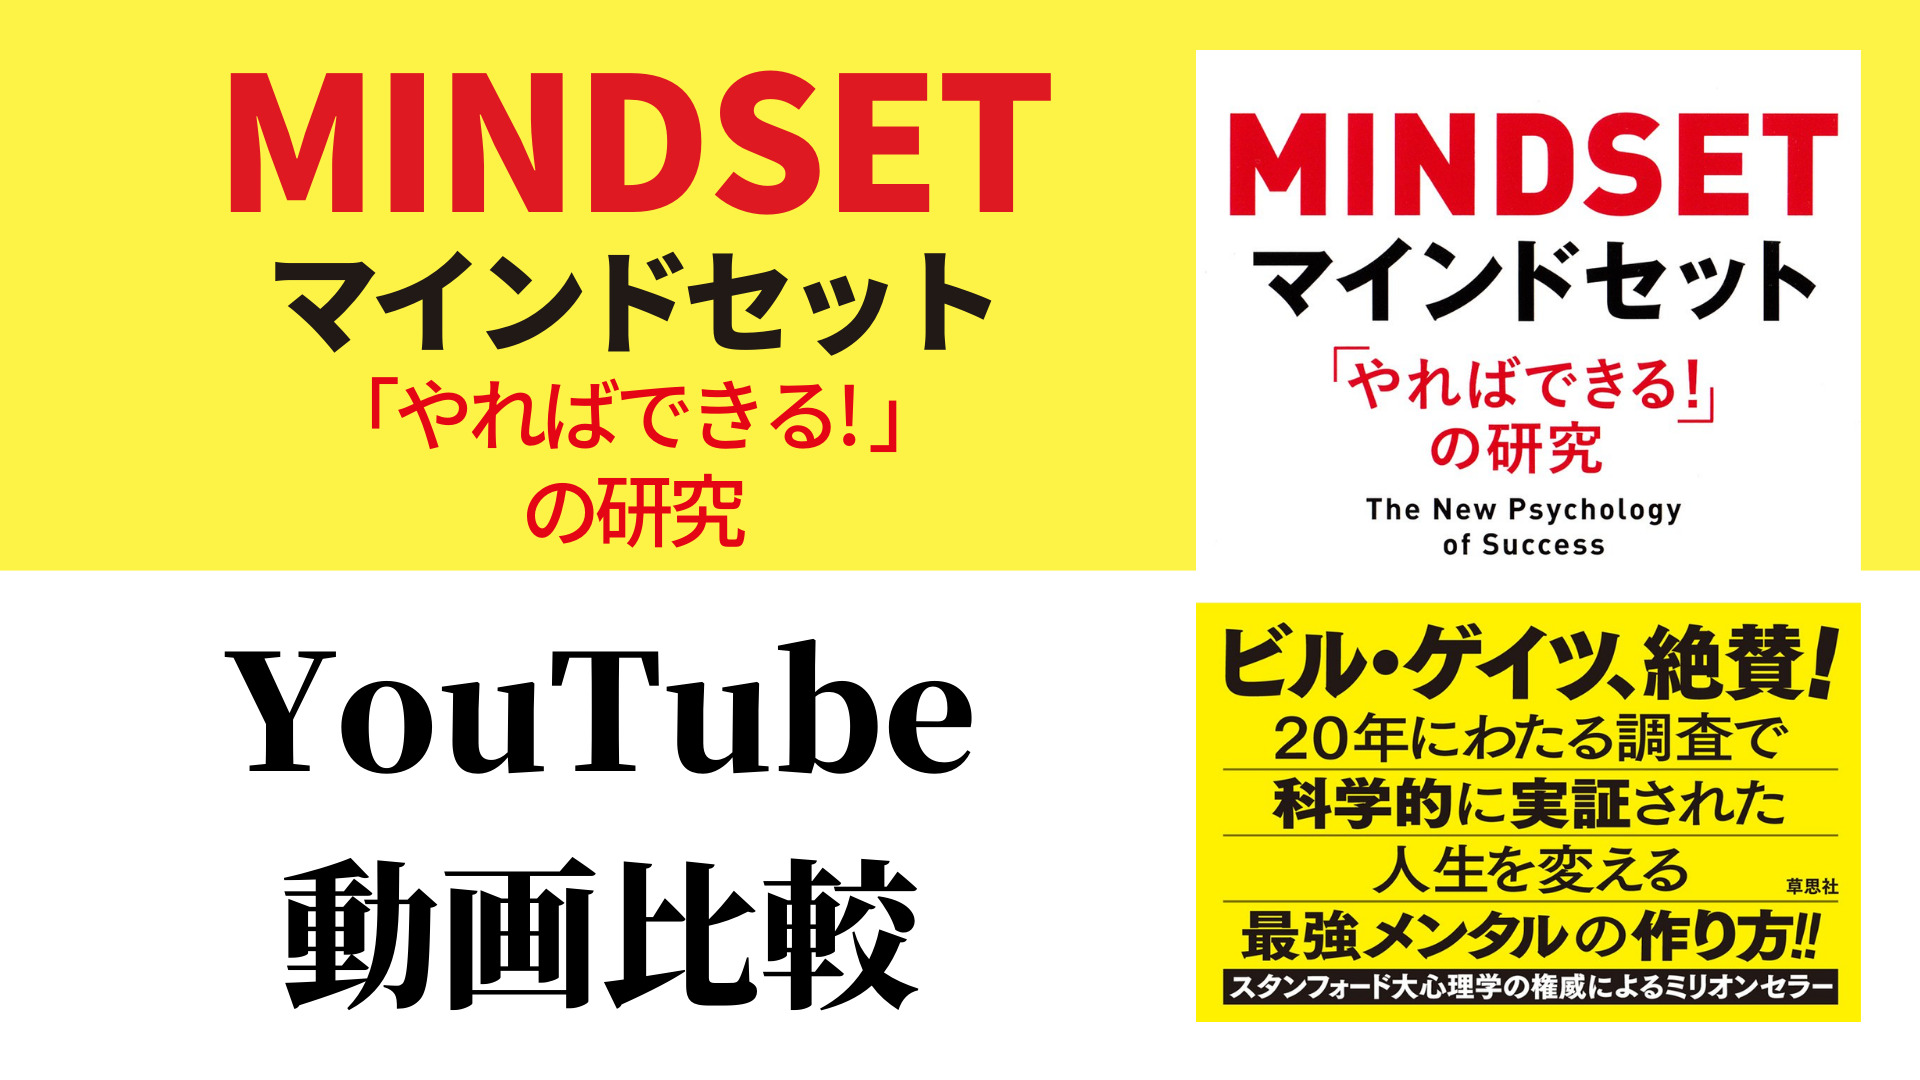 マインドセット「やればできる! 」の研究 YouTube動画比較